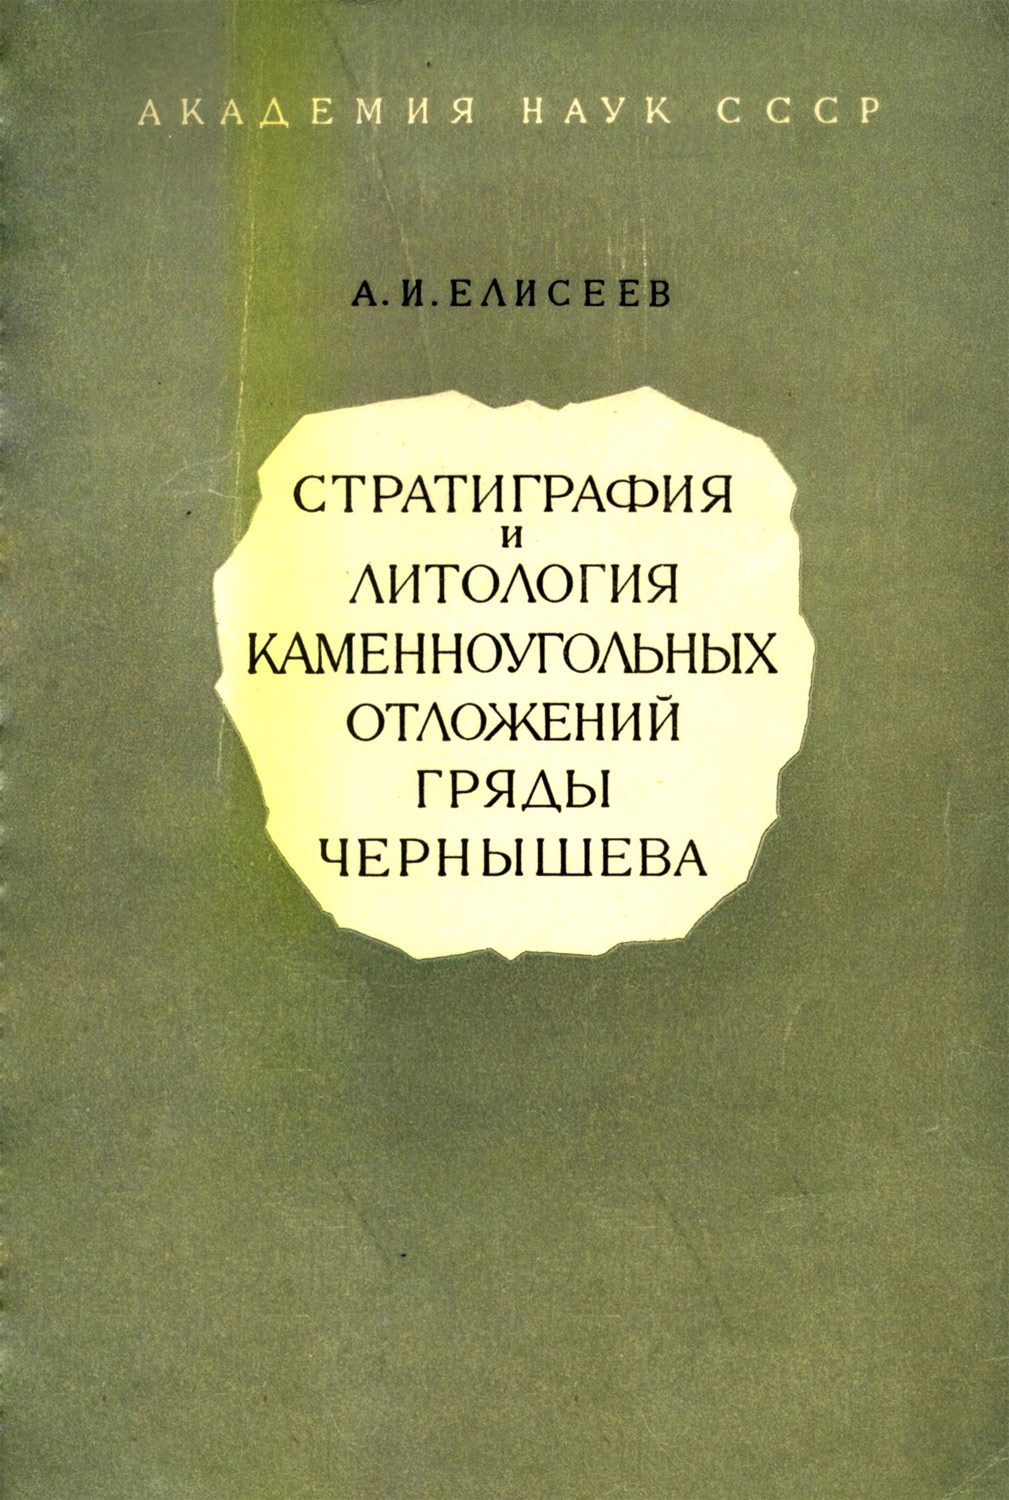 Елисеев А. И. Стратиграфия и литология каменноугольных отложений гряды Чернышева